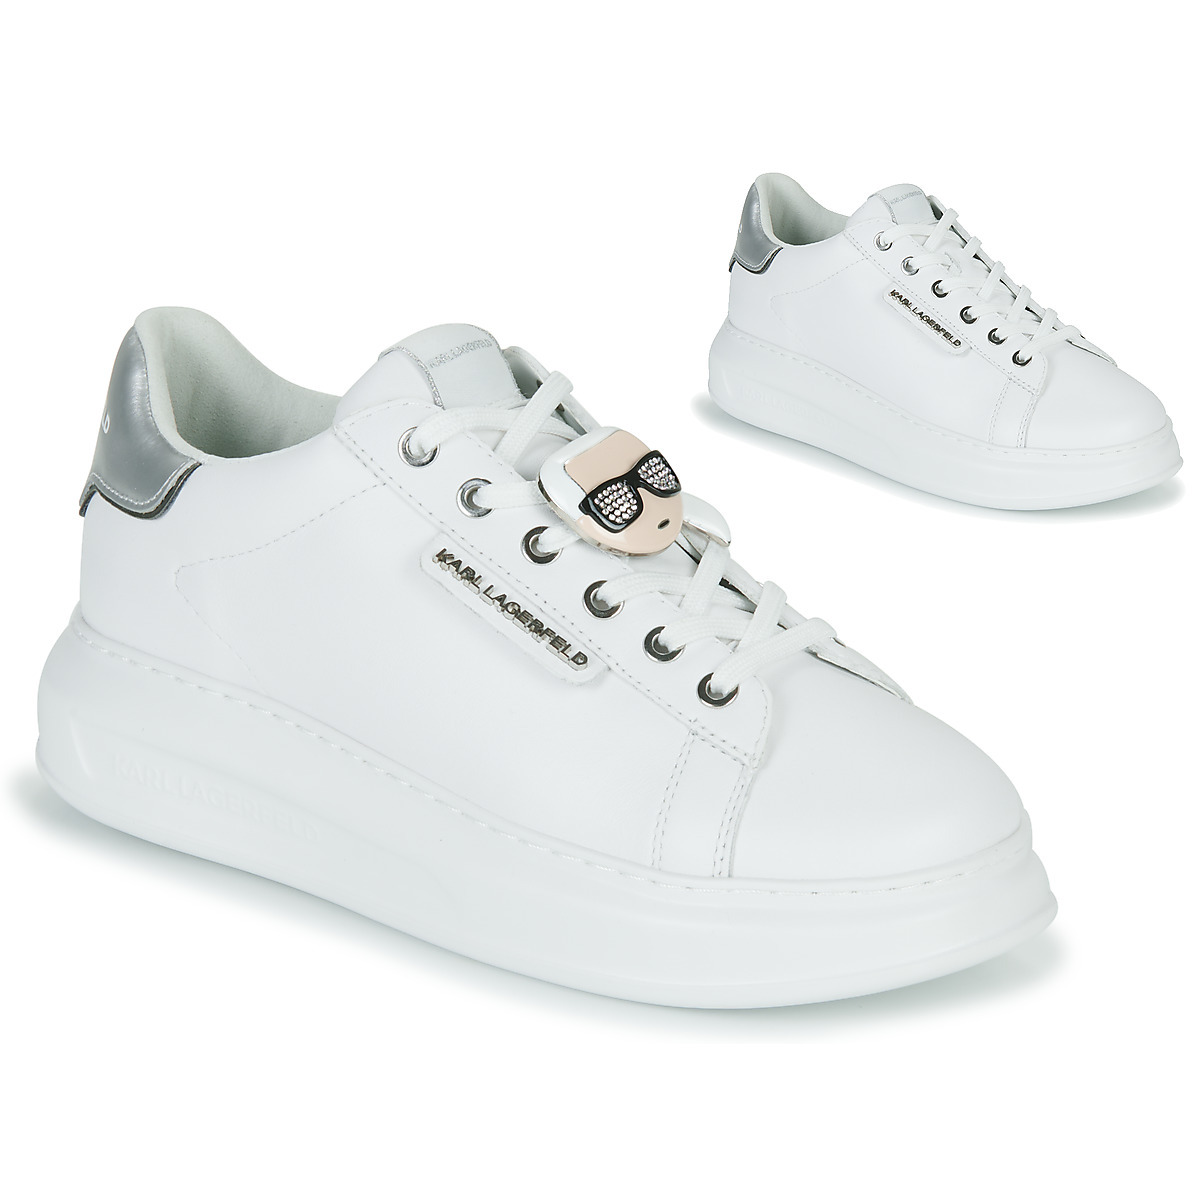 Karl Lagerfeld - Woman Sneakers White Spartoo GOOFASH